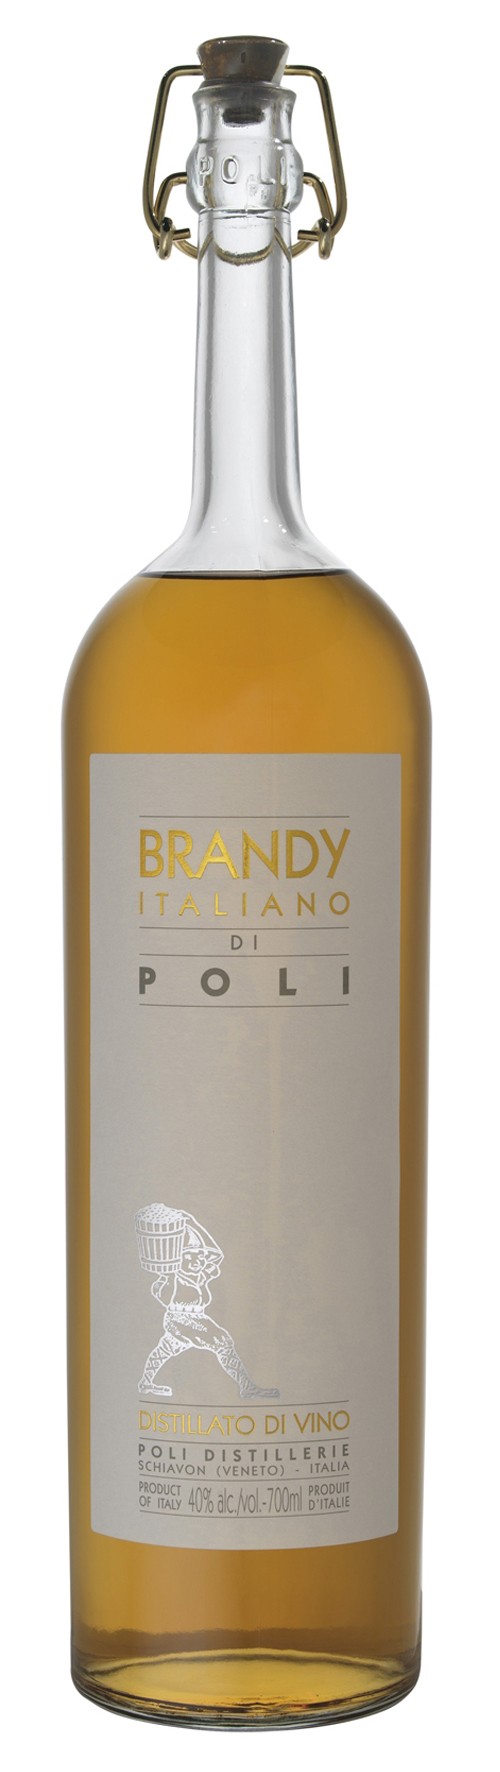 Poli BRANDY ITALIANO